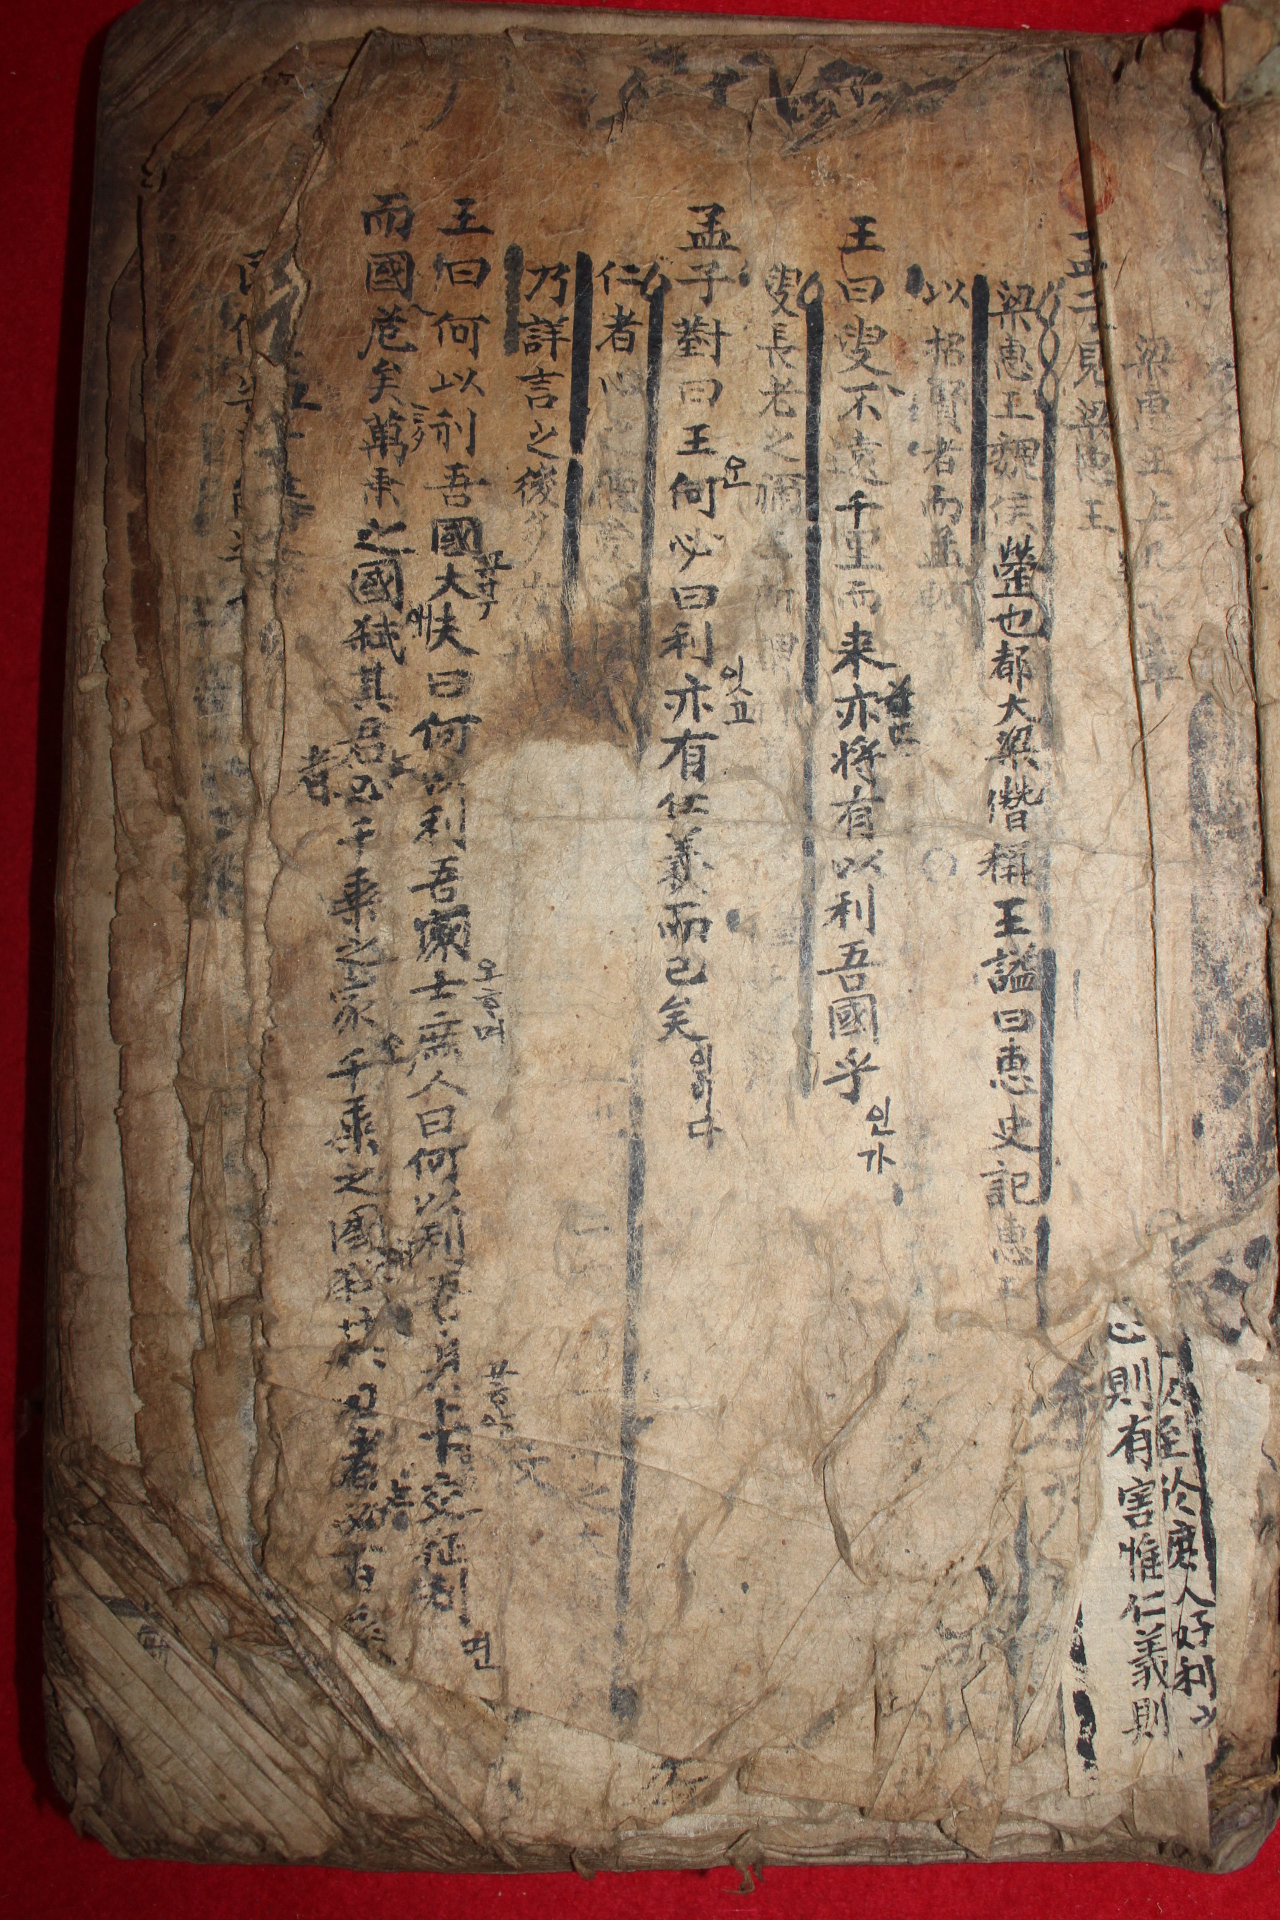 300년이상된 다듬이장지에 고필사본 맹자정문(盟子正文)합부